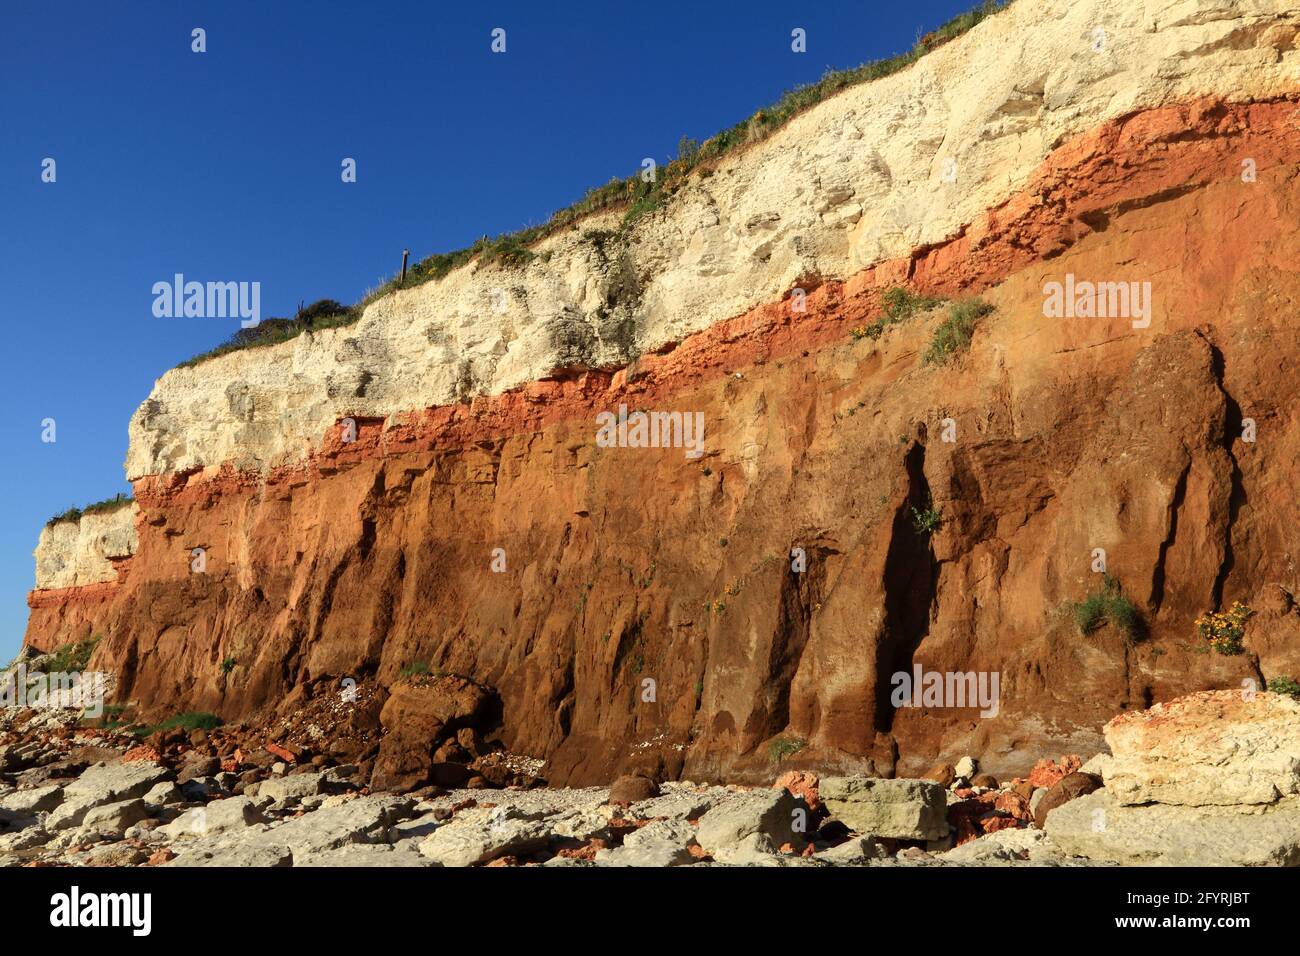 Géologie, Crétacé, sédimentaire, roche, formation, Hunstanton Cliffs, Norfolk, Angleterre, Royaume-Uni 2 Banque D'Images